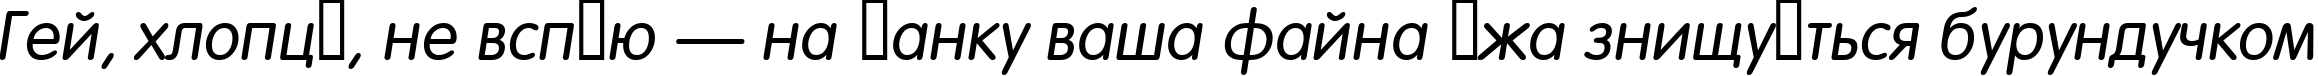 Пример написания шрифтом a_FuturaRound Italic текста на украинском